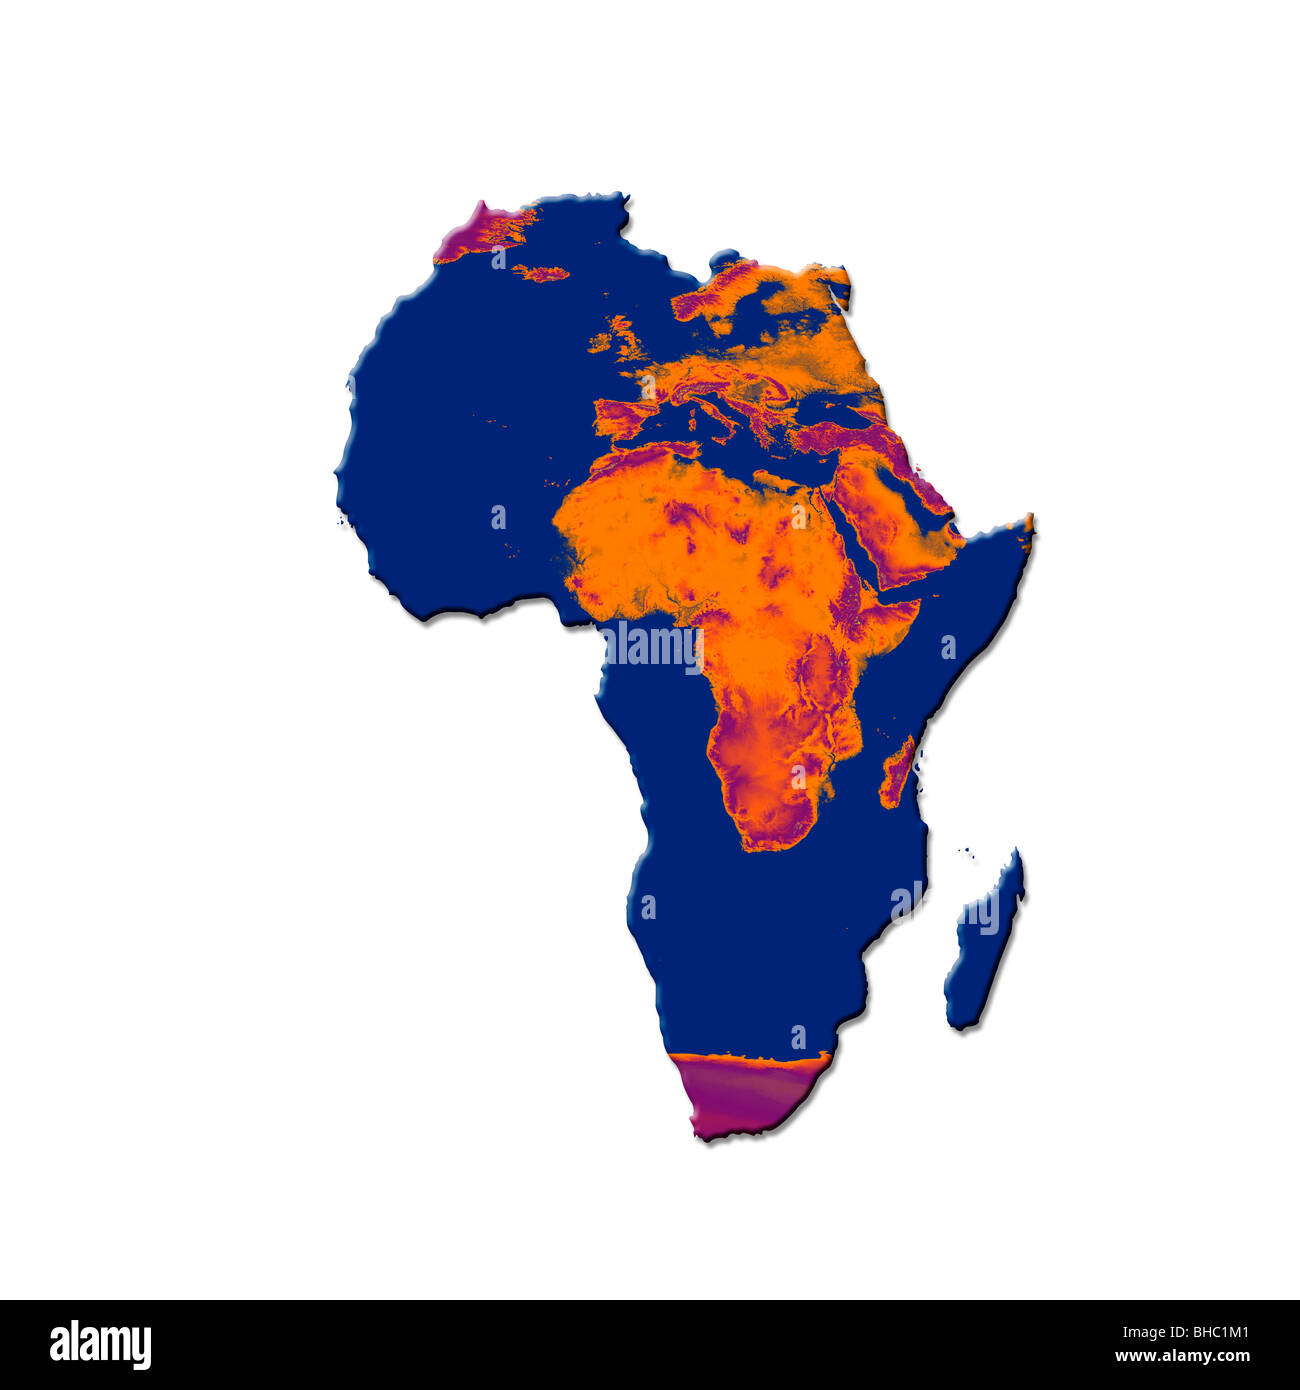 Mapa de África con una imagen quemada de África y Europa superpuestos. Imagen conceptual que representa el calentamiento global y la desertificación Foto de stock